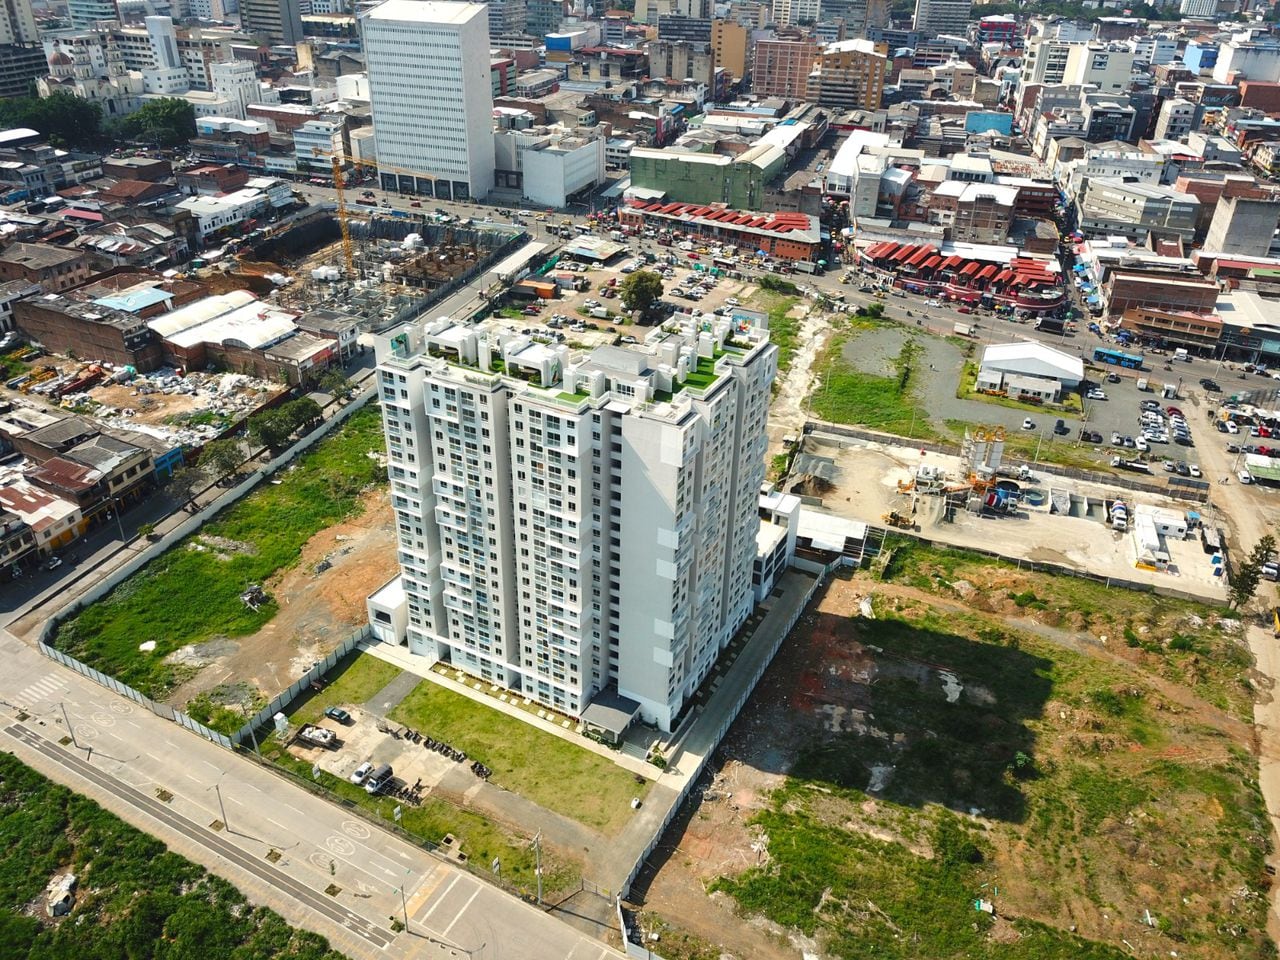 El lote que está detrás de la torre de apartamentos, con carros parqueados, es donde se edificará Paraíso Centro Comercial, cuya obra estaría lista en 2027.